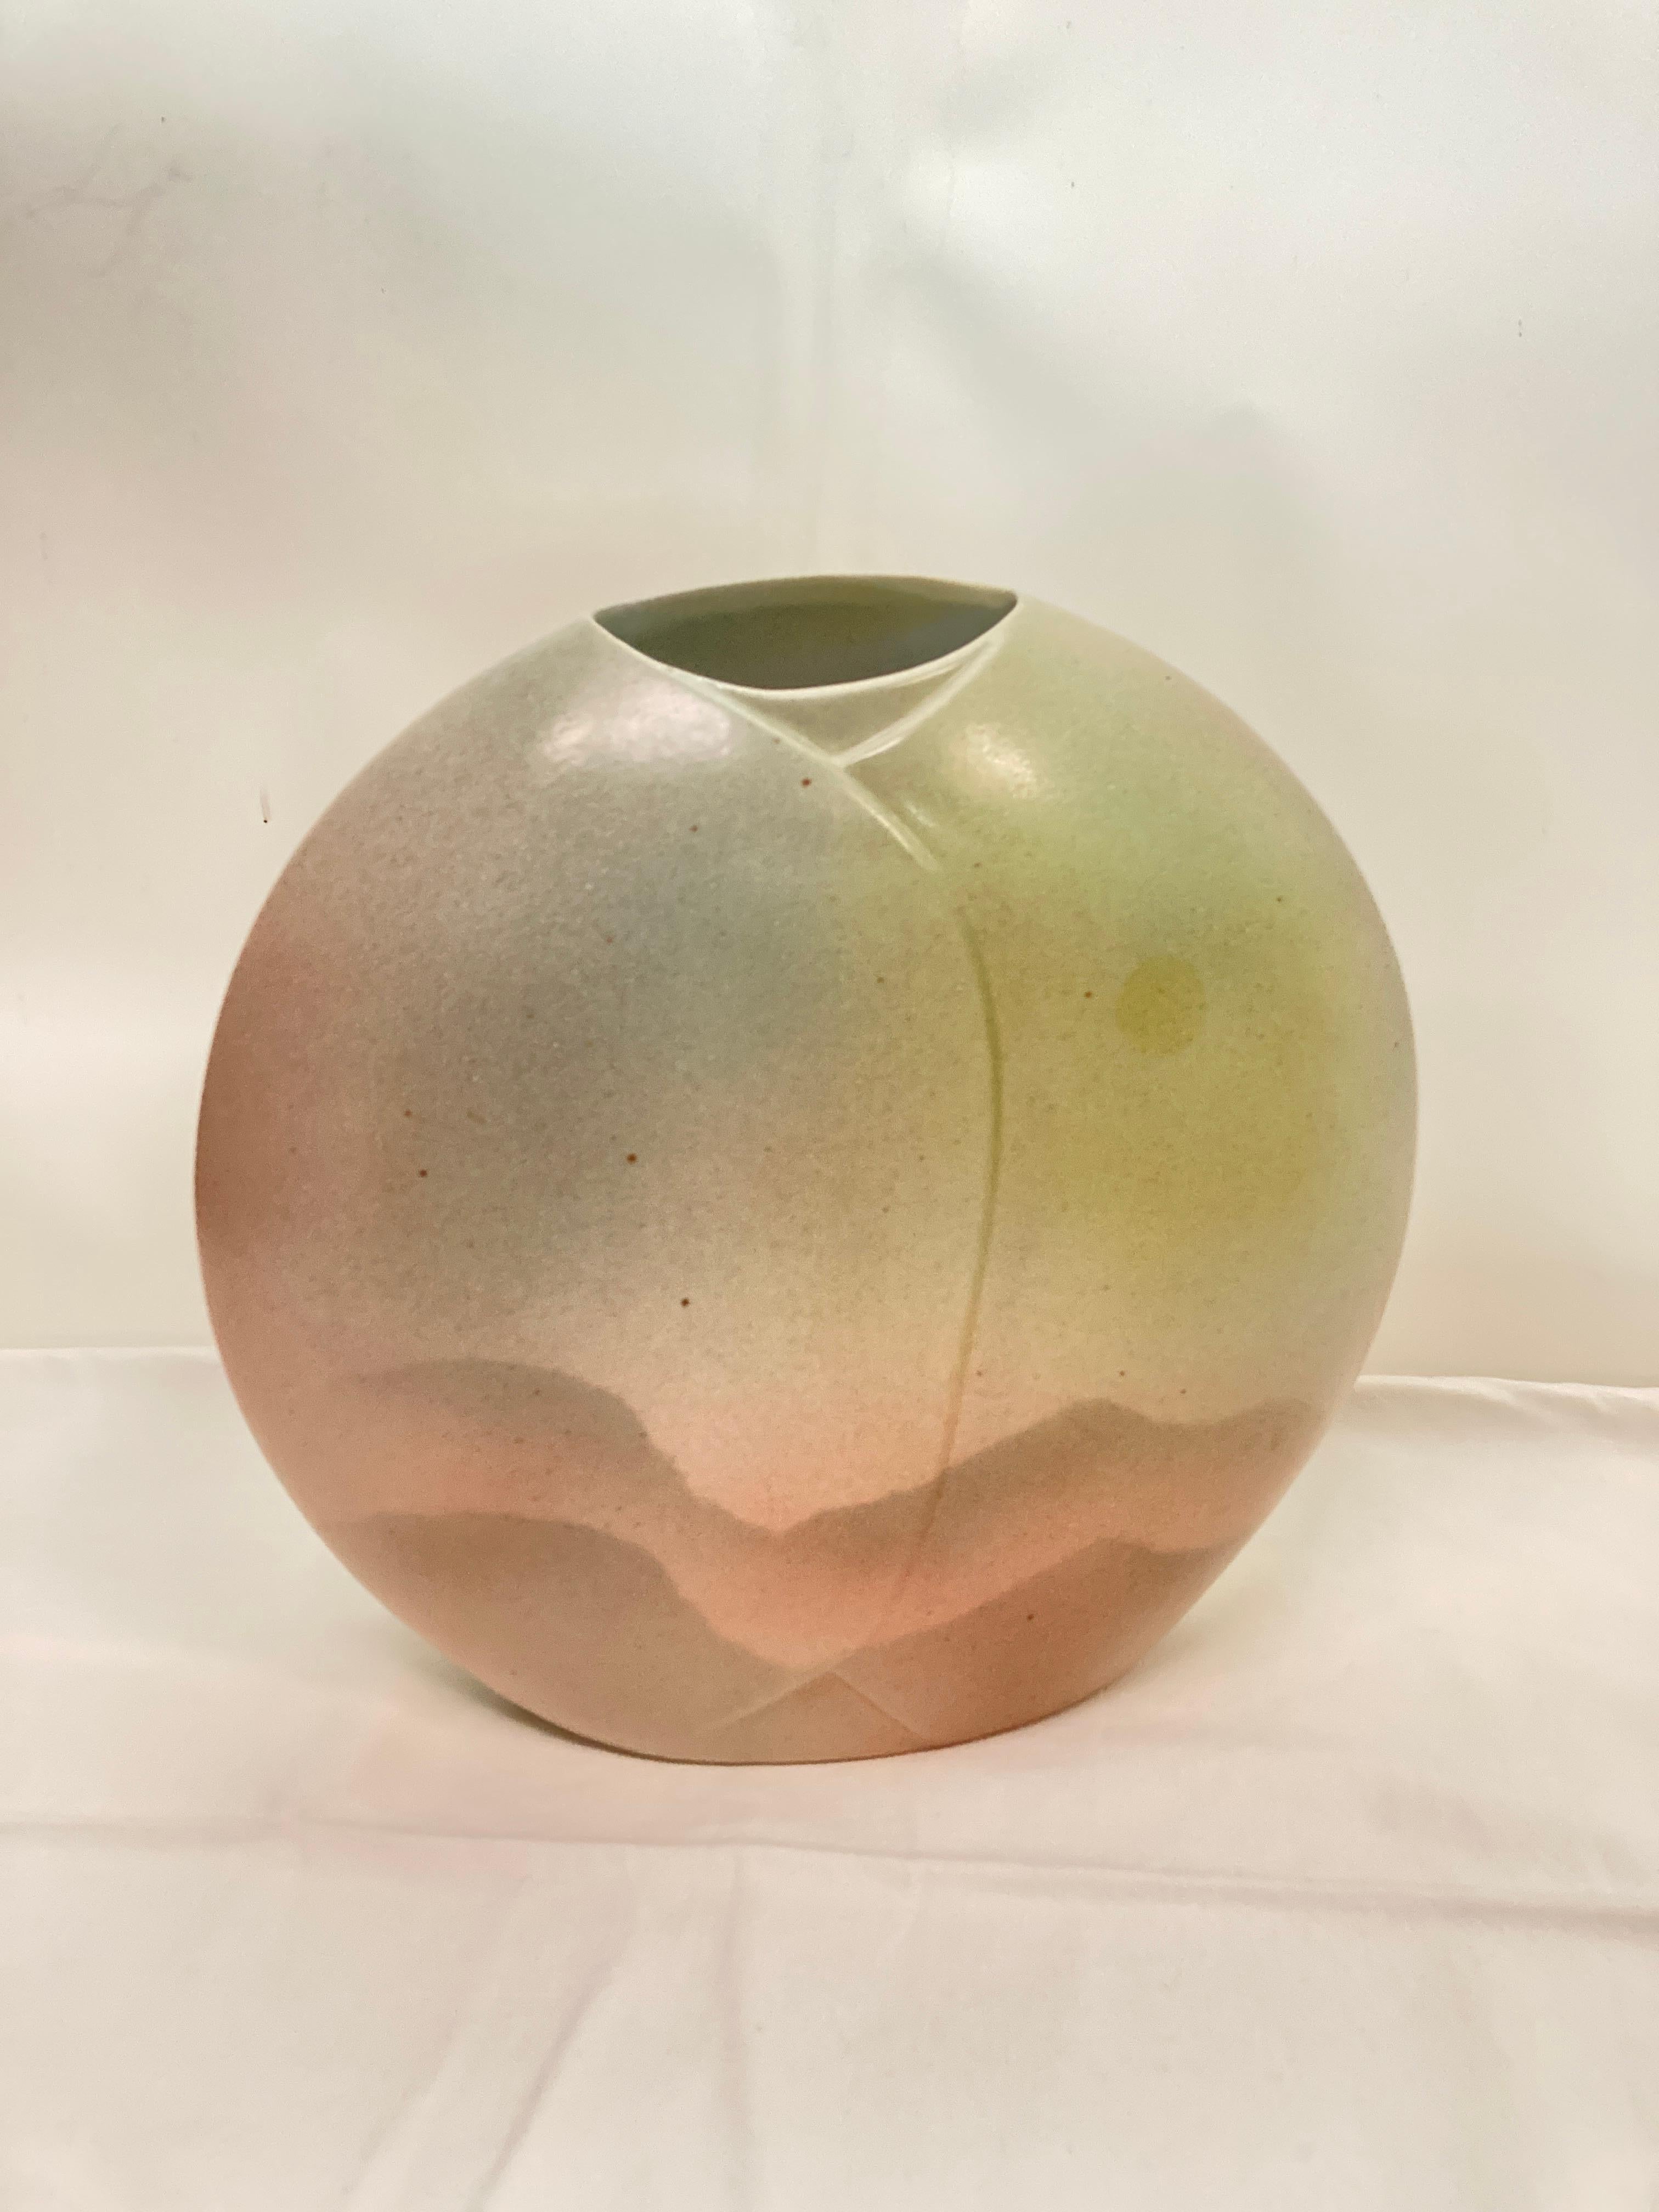 1970's Porcelain vase by maison Vireben
Signed
France
